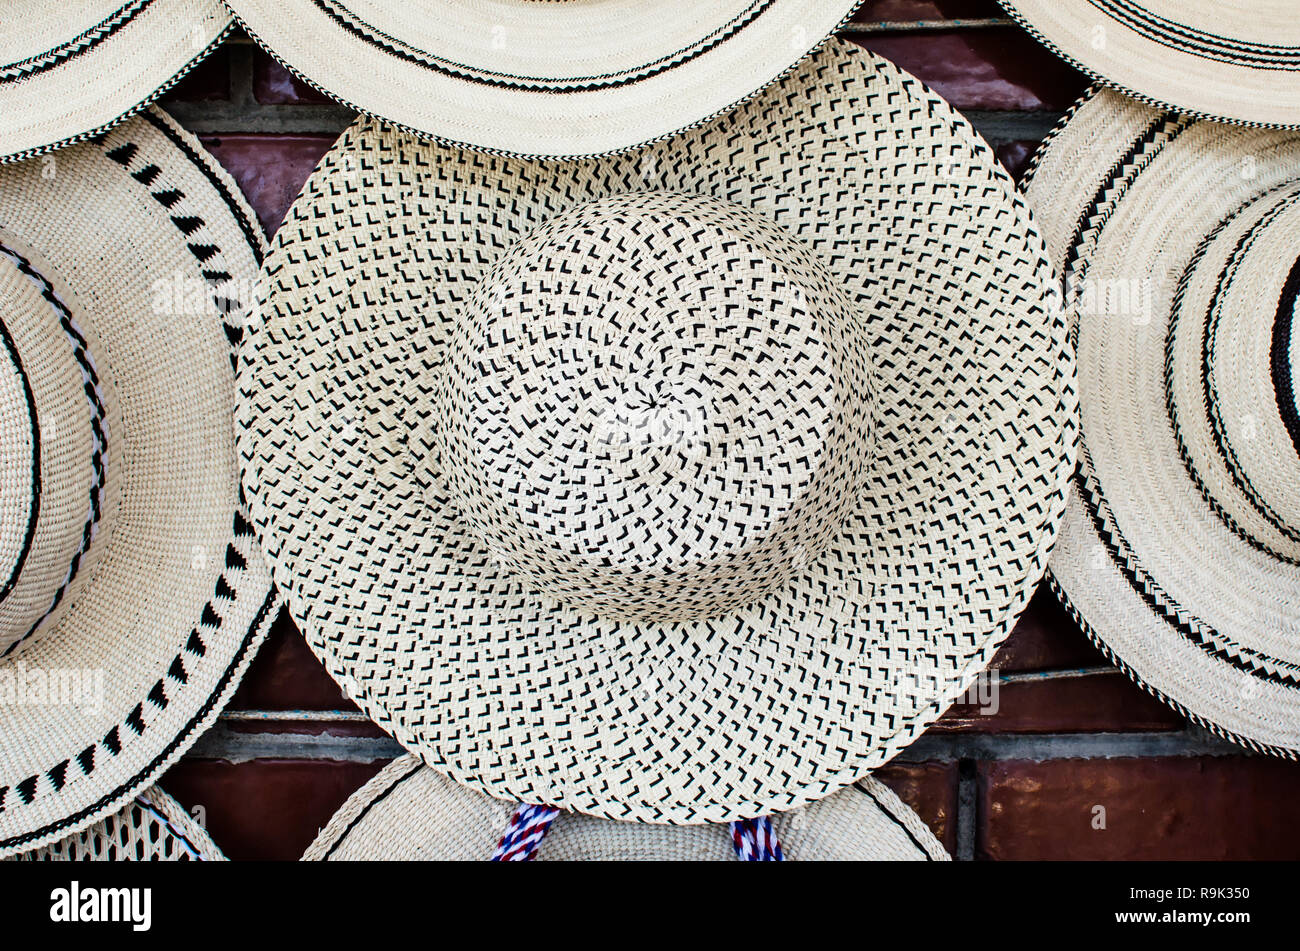 Eine Vielzahl von Panama Hüte für Verkauf. Die in der Mitte des Bildes ist bekannt als "Pepita de Guatemala" Stockfoto